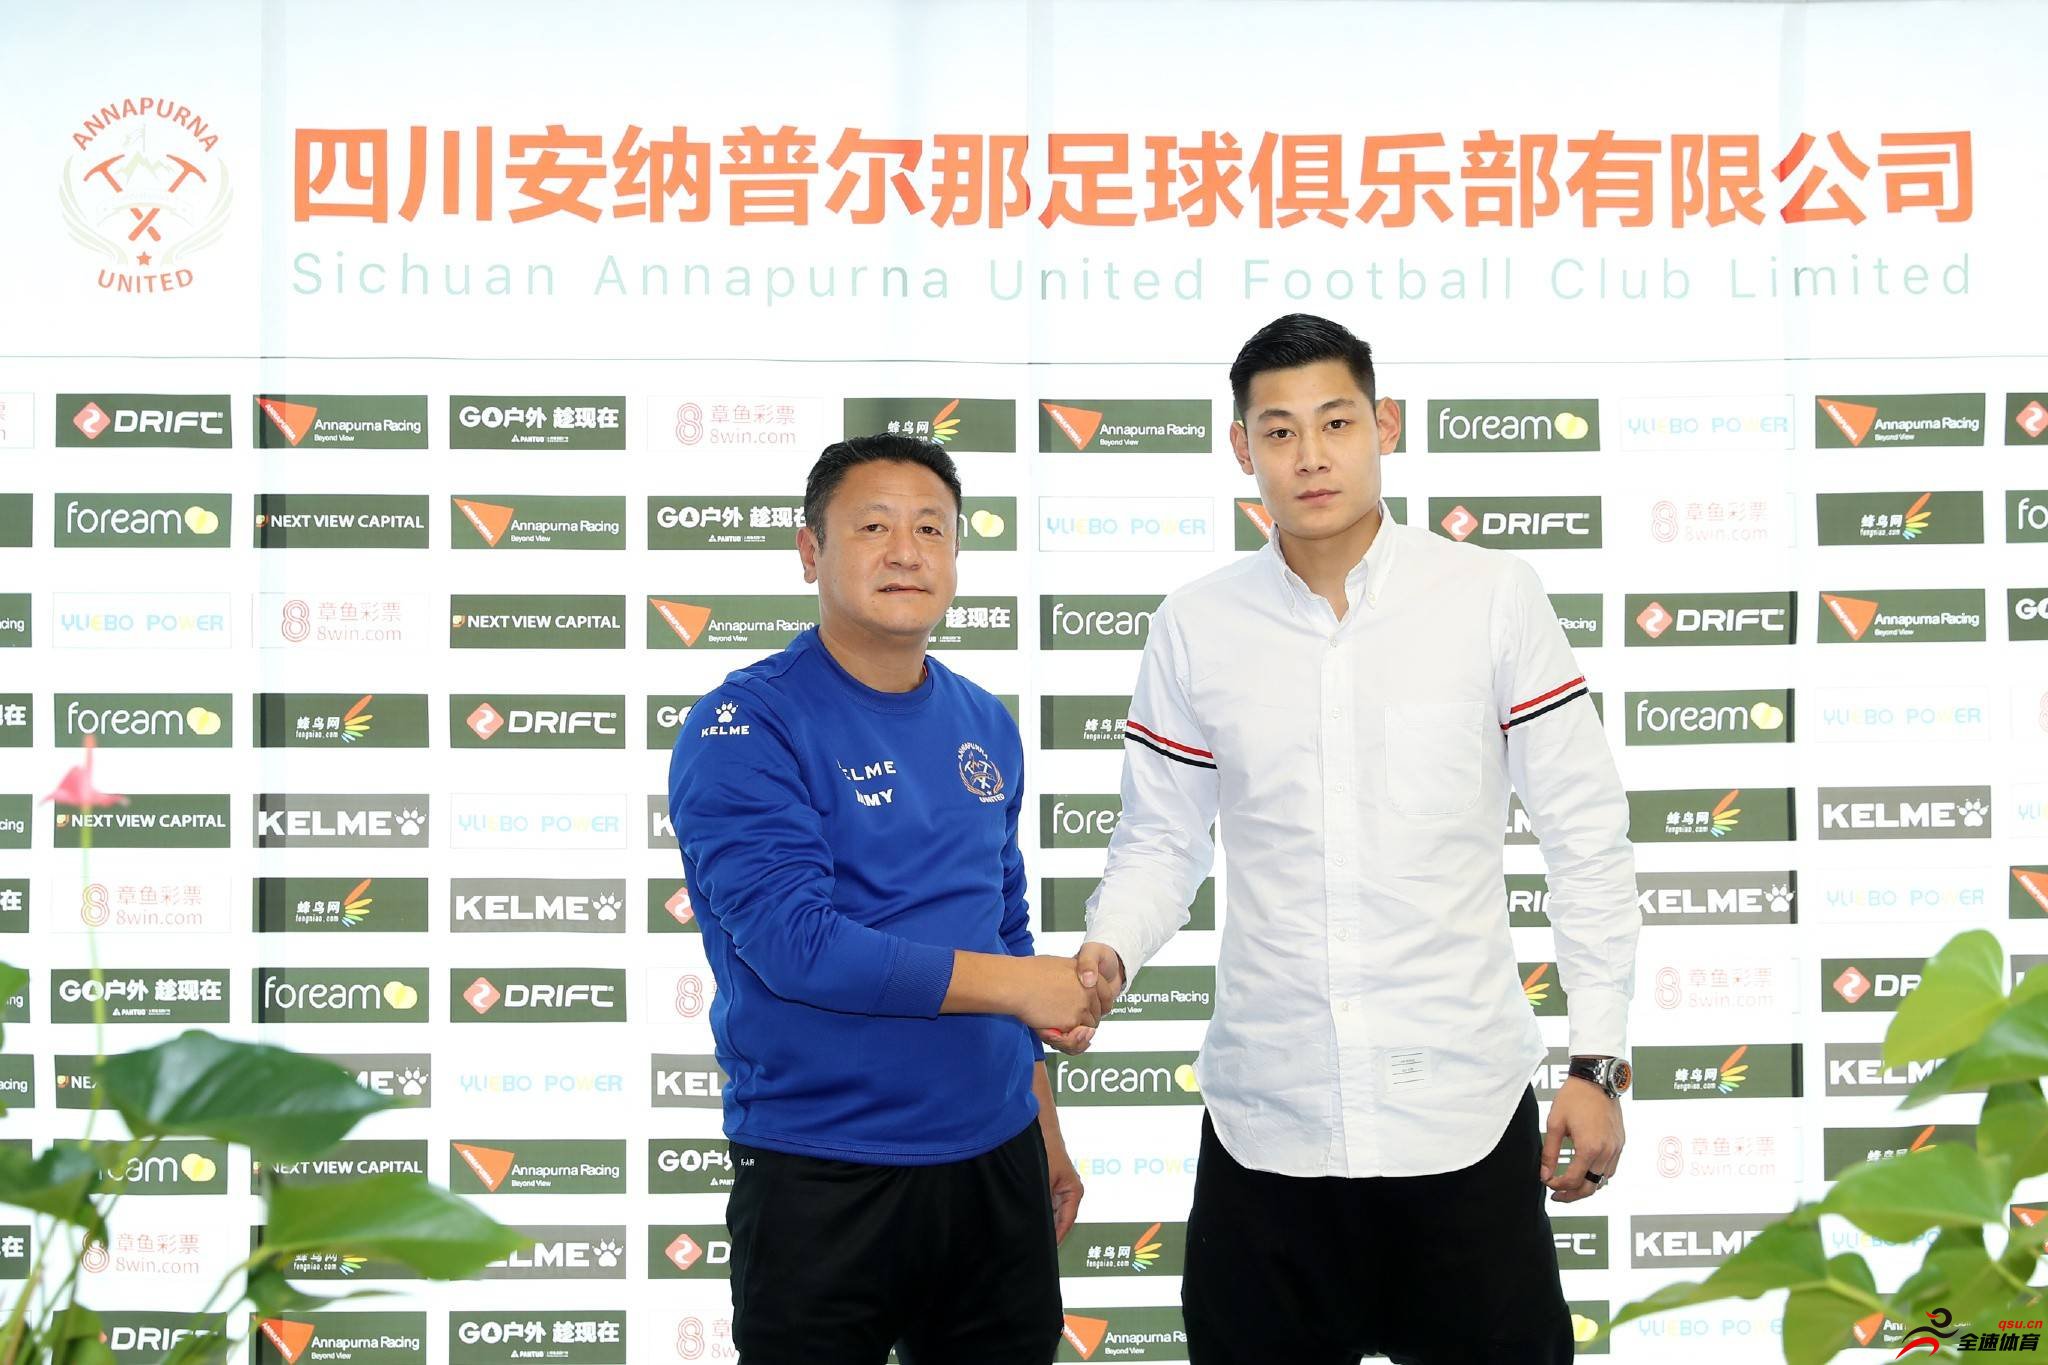 四川安纳普尔那足球俱乐部与张世昌完成正式签约工作